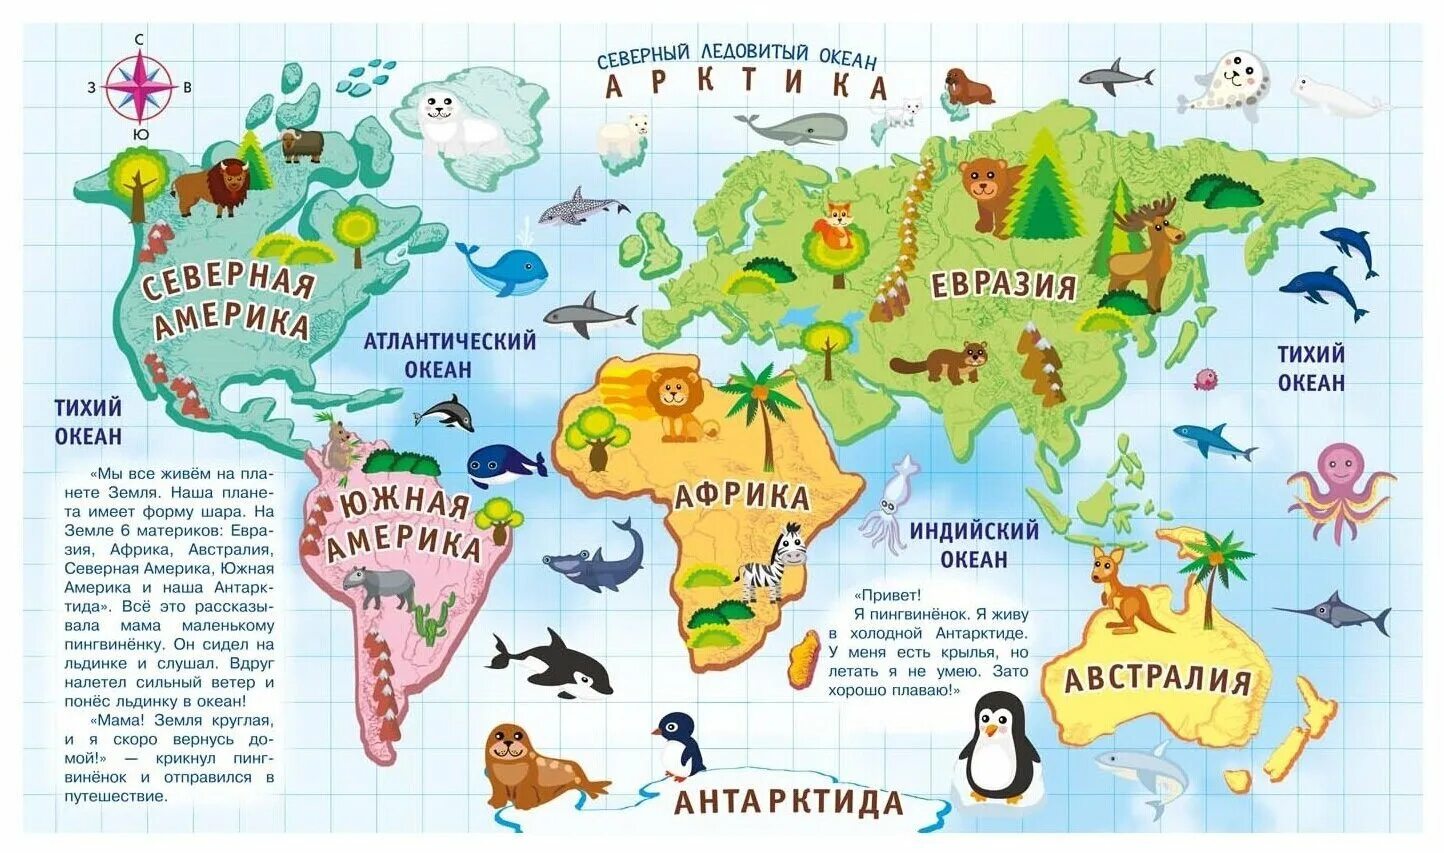 Материки для детей. Континенты для дошкольников. Изображения материков для детей. Континенты земли для детей.